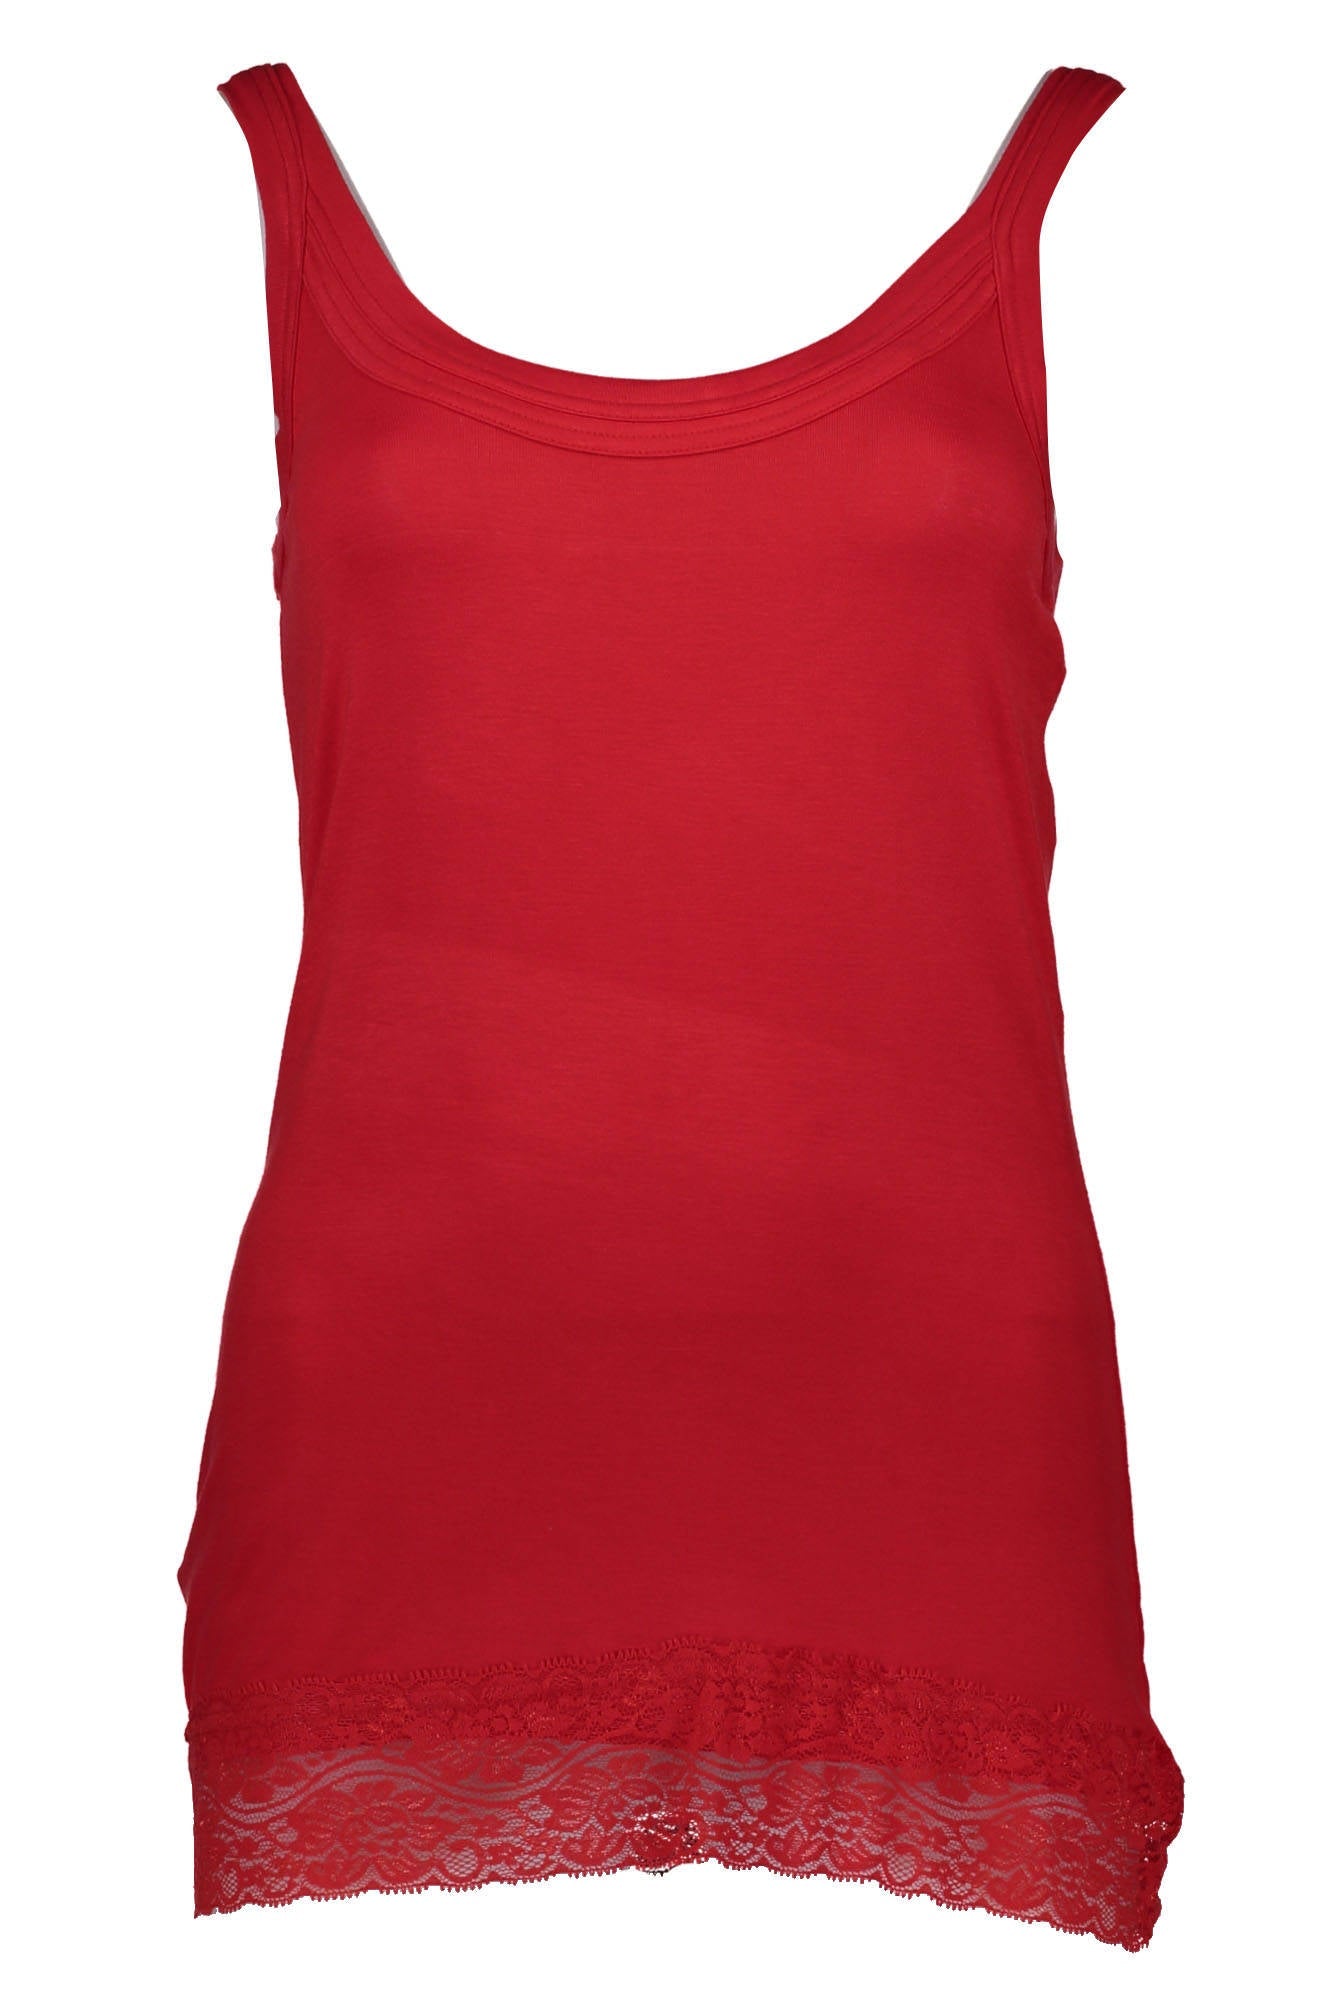 Silvian Heach Red Tops & T-Shirt - Fizigo